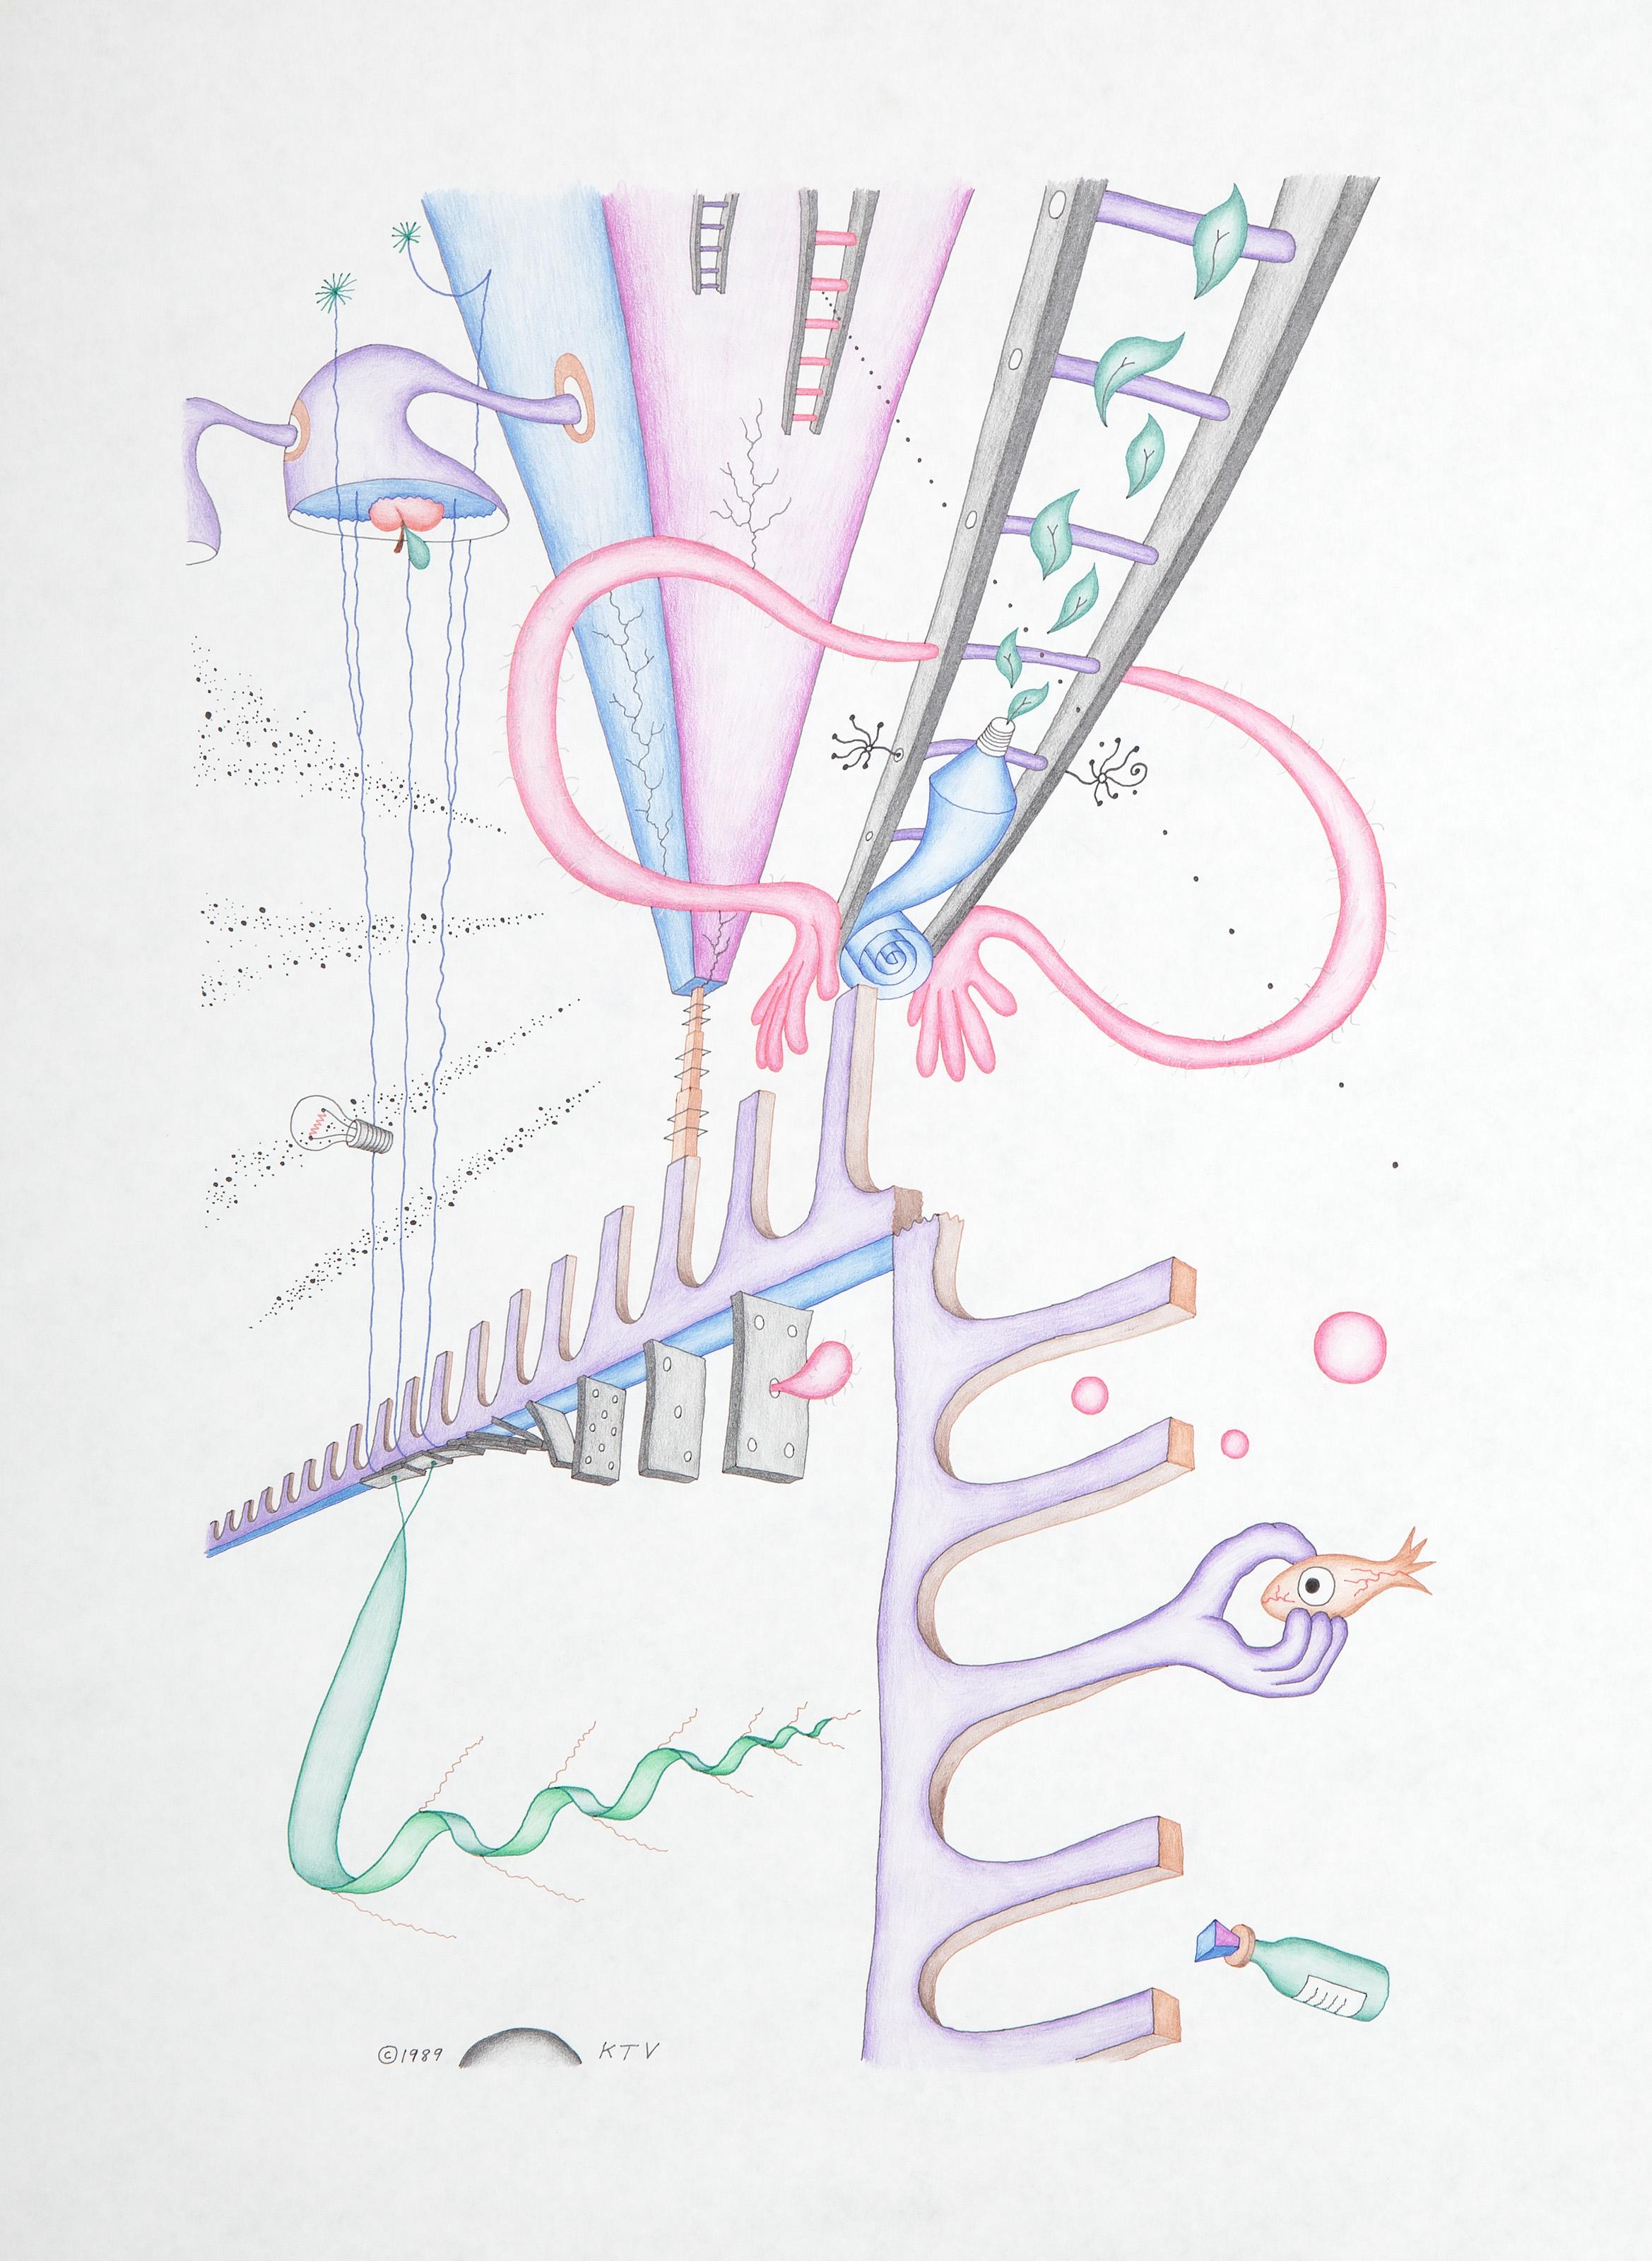 Kevin Varner, Américain (1954 - 2019) -  Influence de l'énergie pyramidale sur les bactéries géantes. Année : 1991, Médium : Crayon de couleur et encre sur papier, signé et daté en bas à gauche, Format : 24 x 18 in. (60.96 x 45.72 cm) 